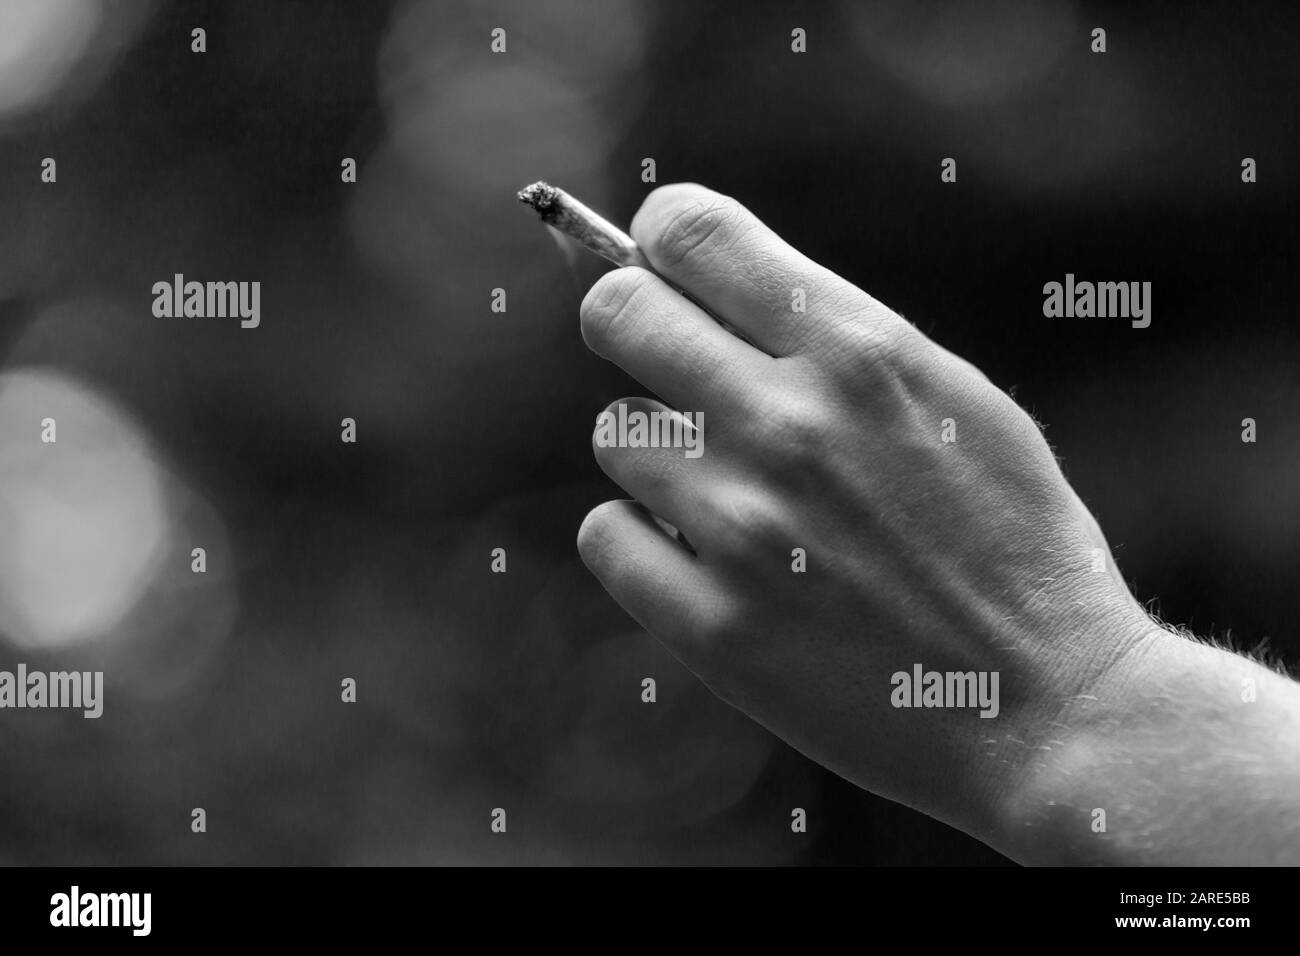 Schwarzweiß-selektiver Fokus-Nahaufnahme von der Hand der kaukasischen Frau, die Marihuana-Gelenk hält. Cannabiszigarette wird außerhalb des Fokushintergrunds geraucht. Stockfoto